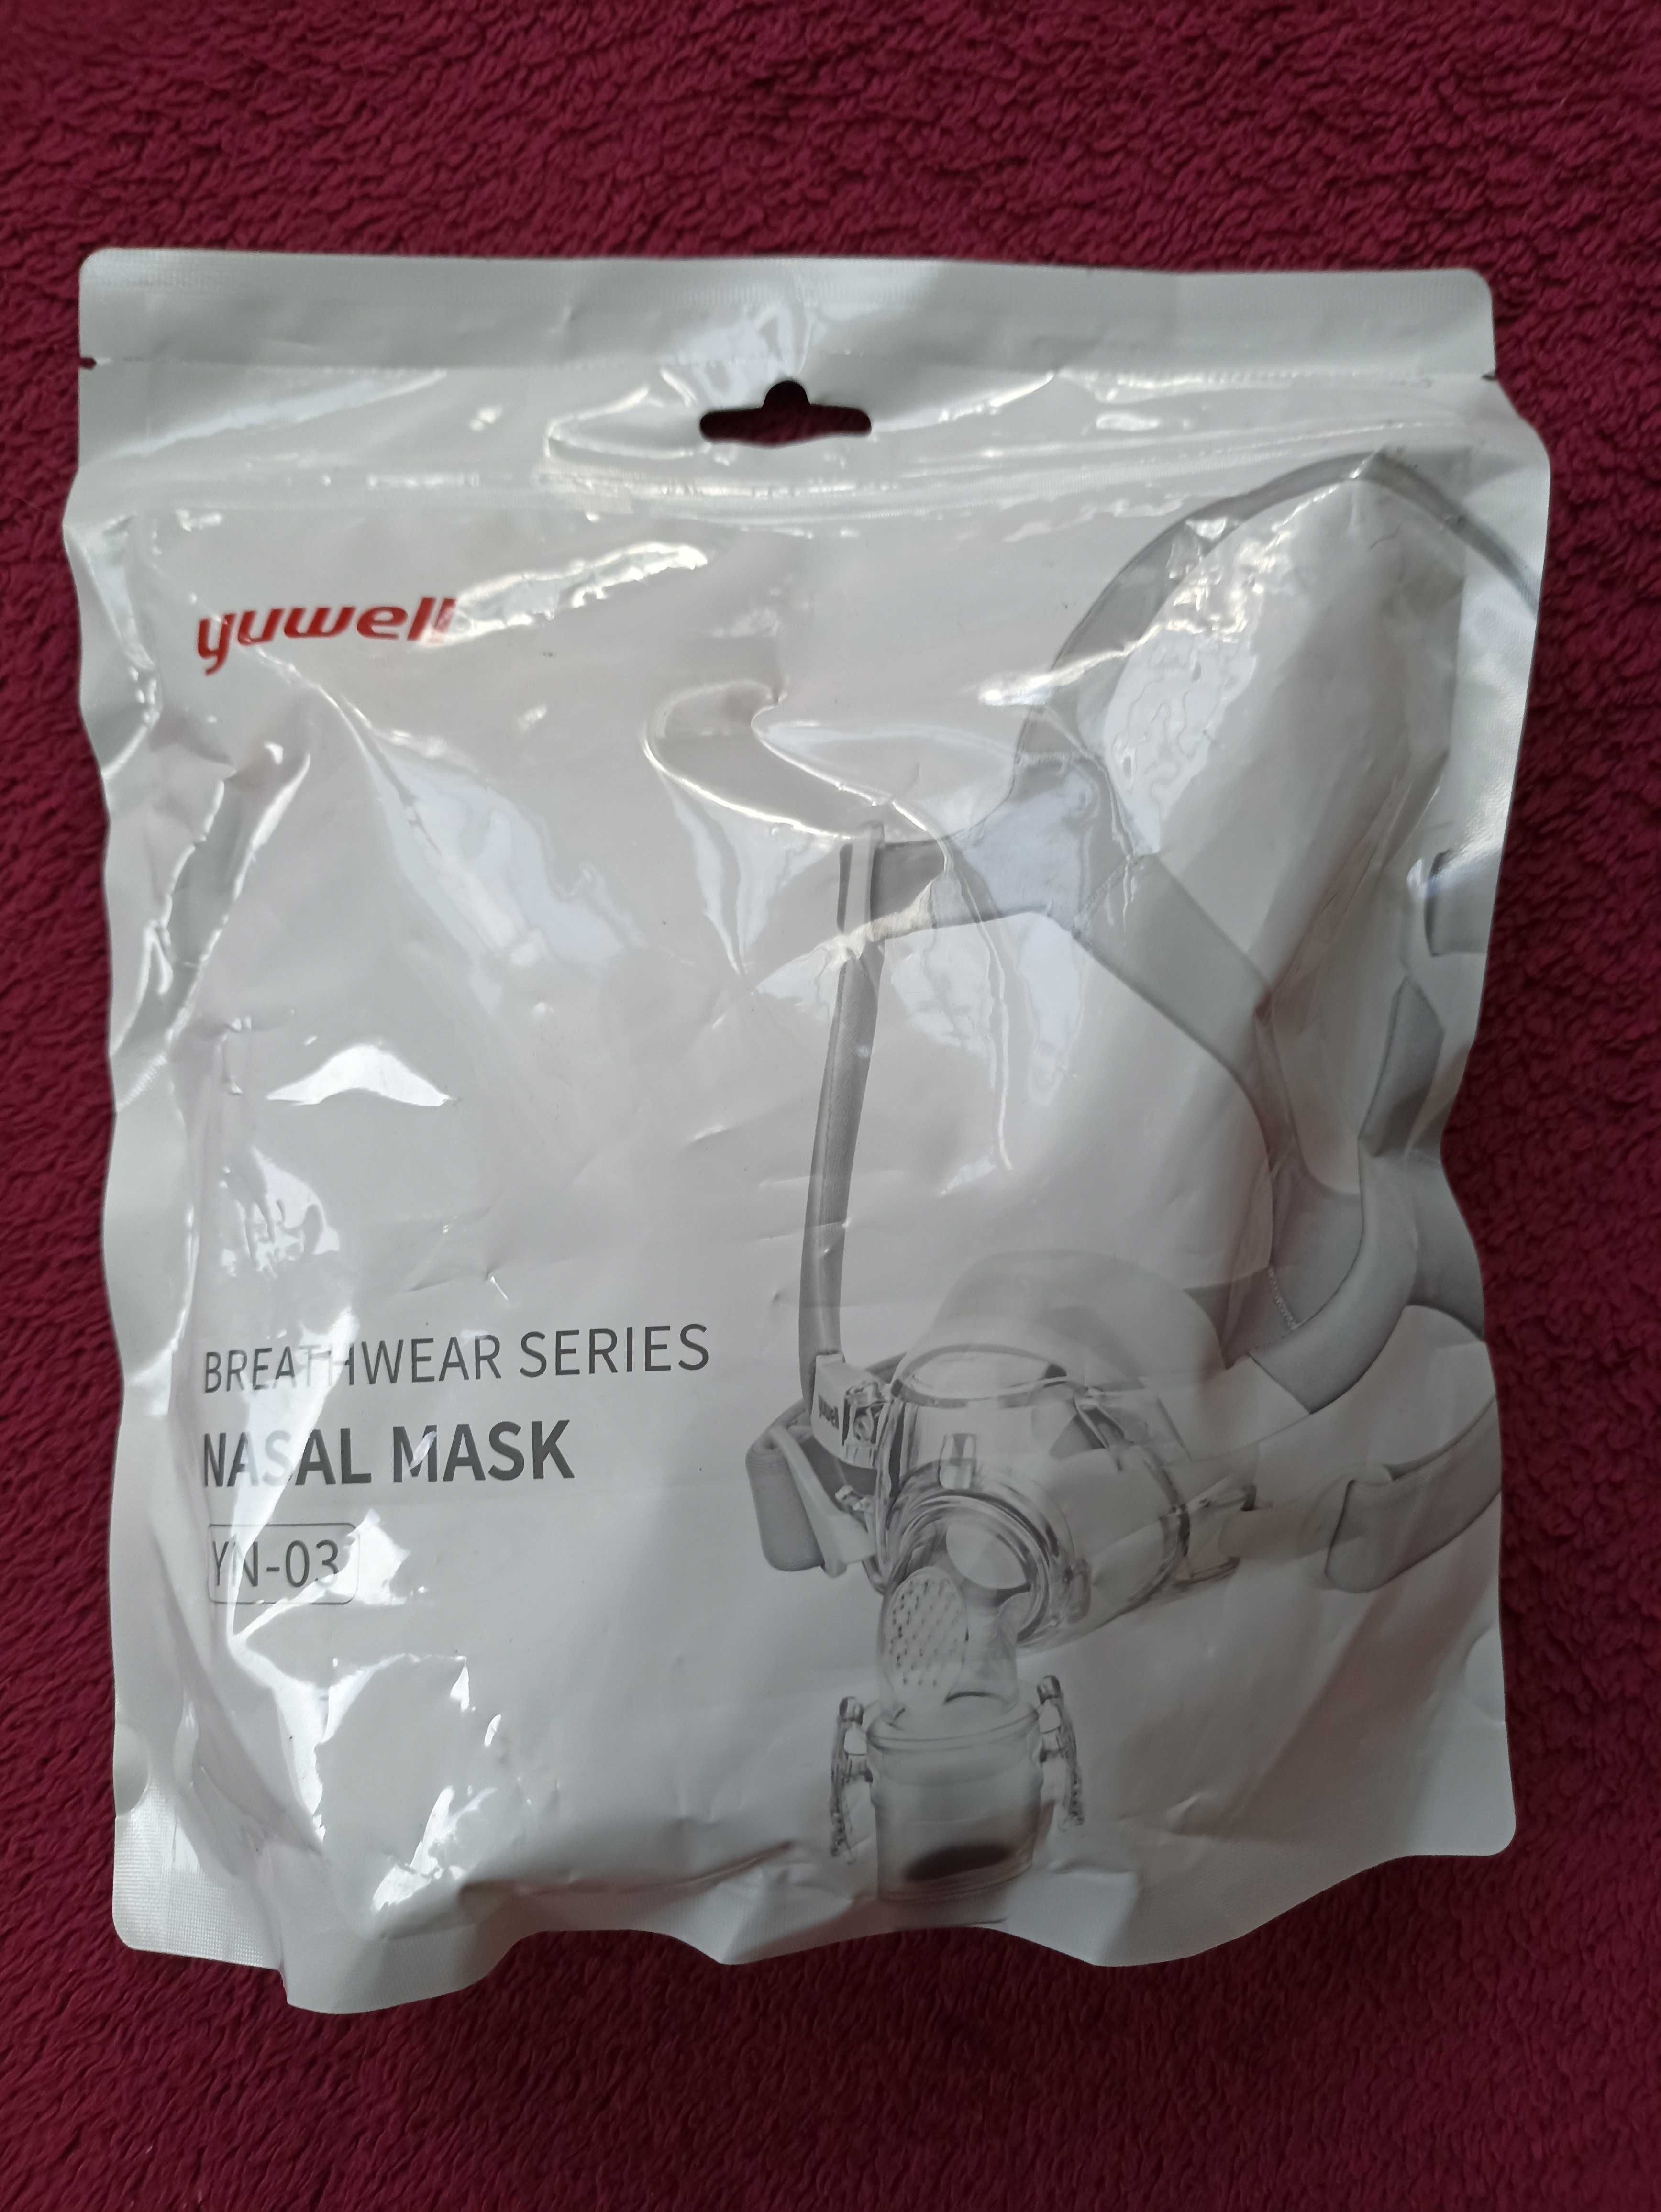 Maska nosowa Yuwell YN-03 - rozmiar L do aparatu CPAP..